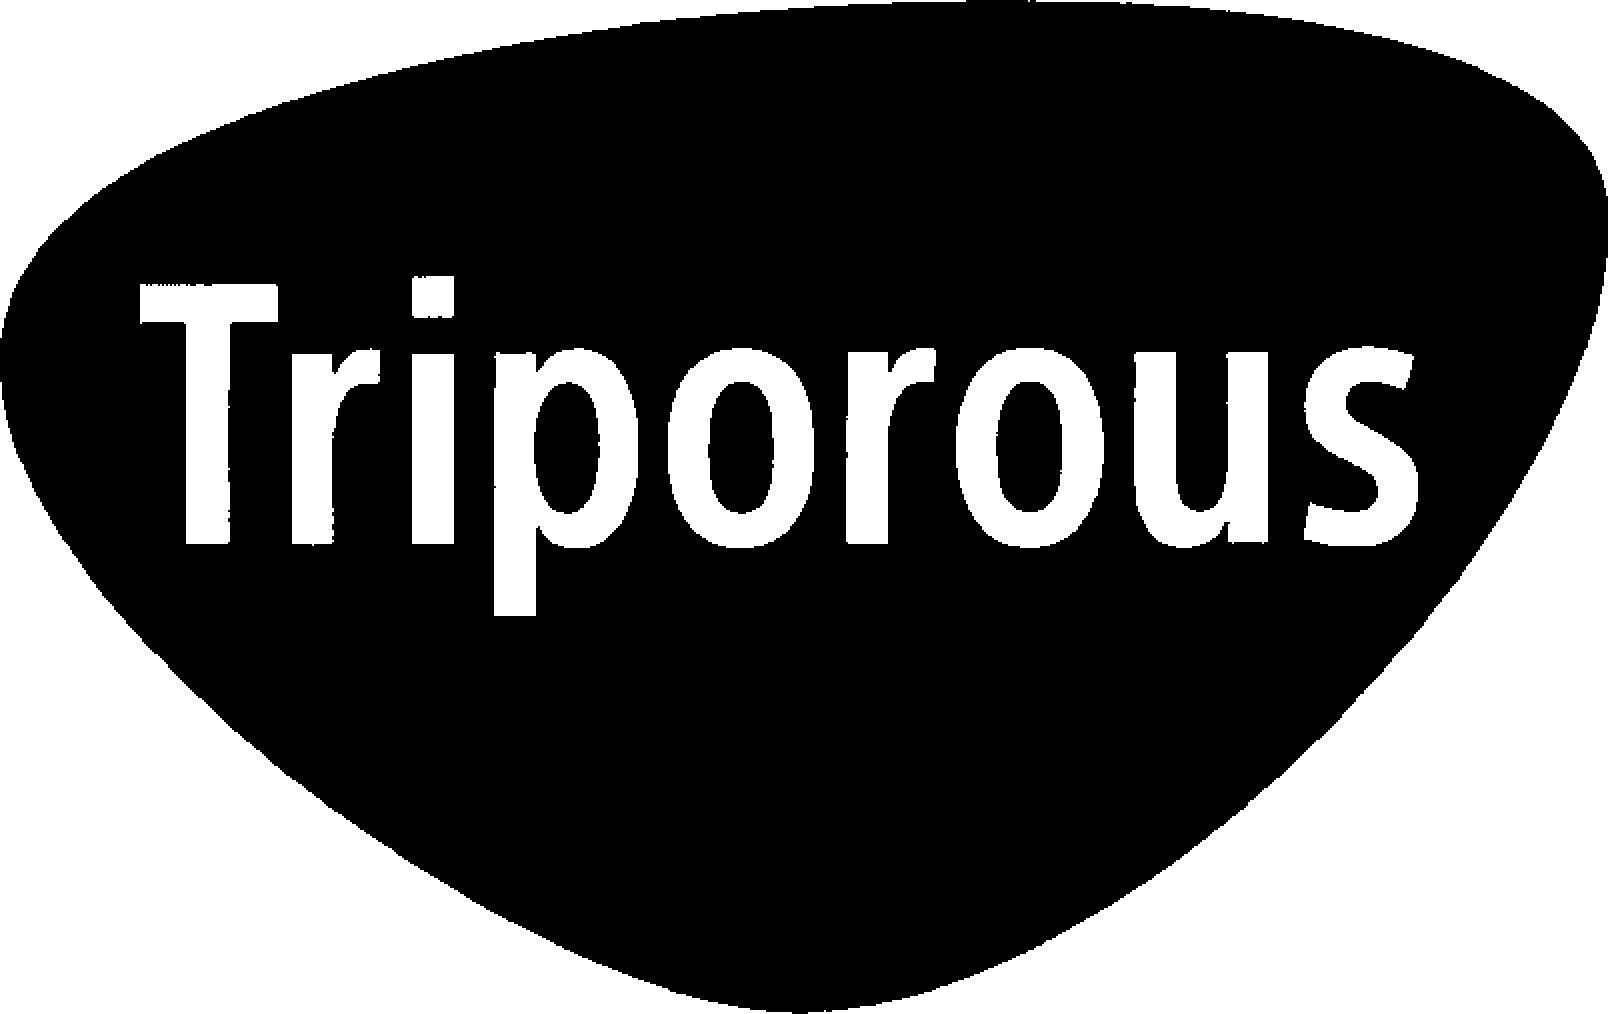 TRIPOROUS